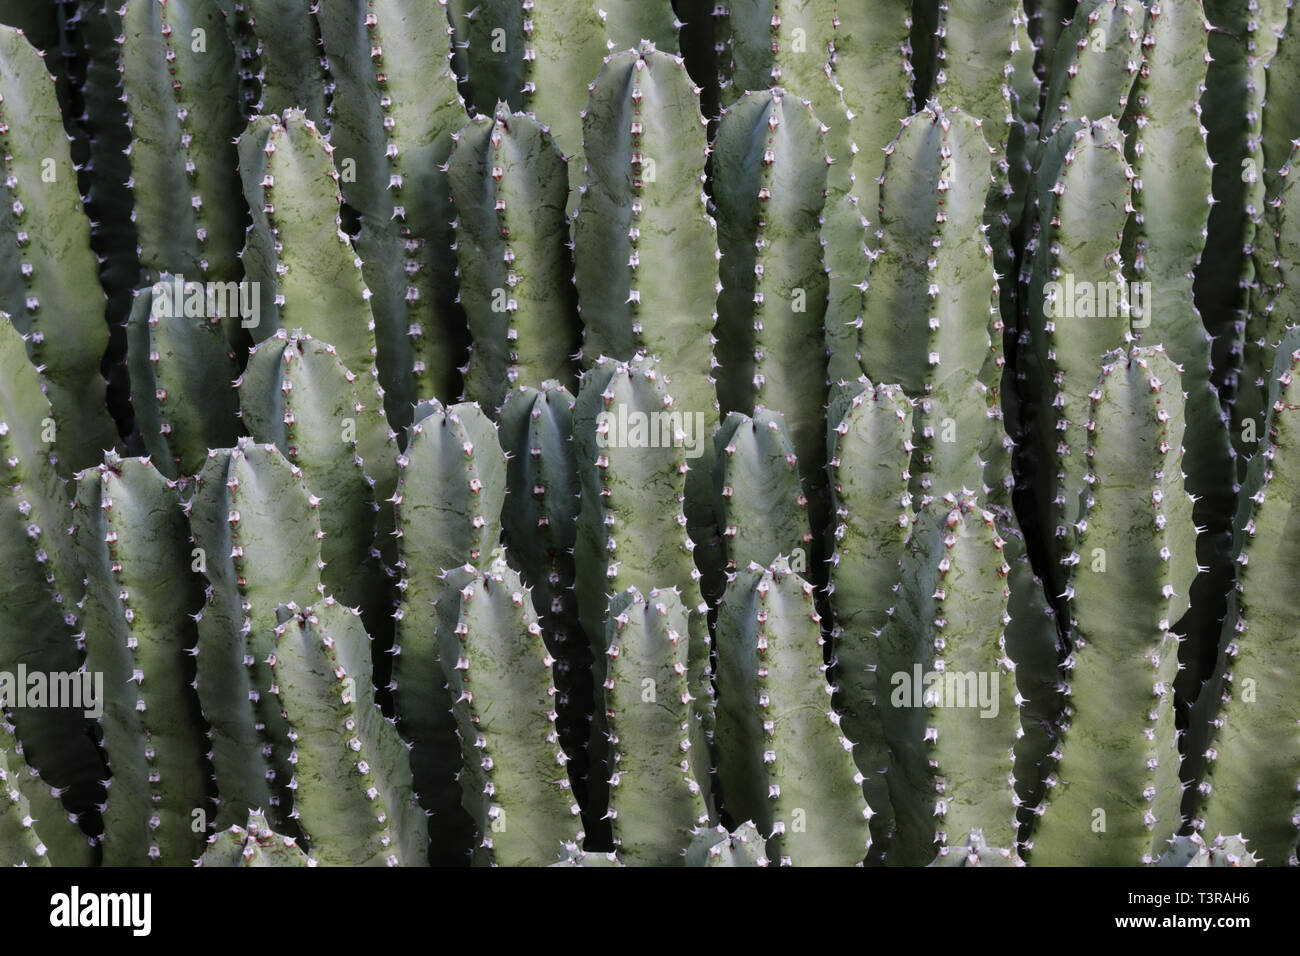 Vista ingrandita del Tumulo marocchino (Euphorbia resinifera), chiamato anche Euforbia di resina. Succulento è liscia la pelle verde, con aghi spinosi lungo i bordi. Foto Stock